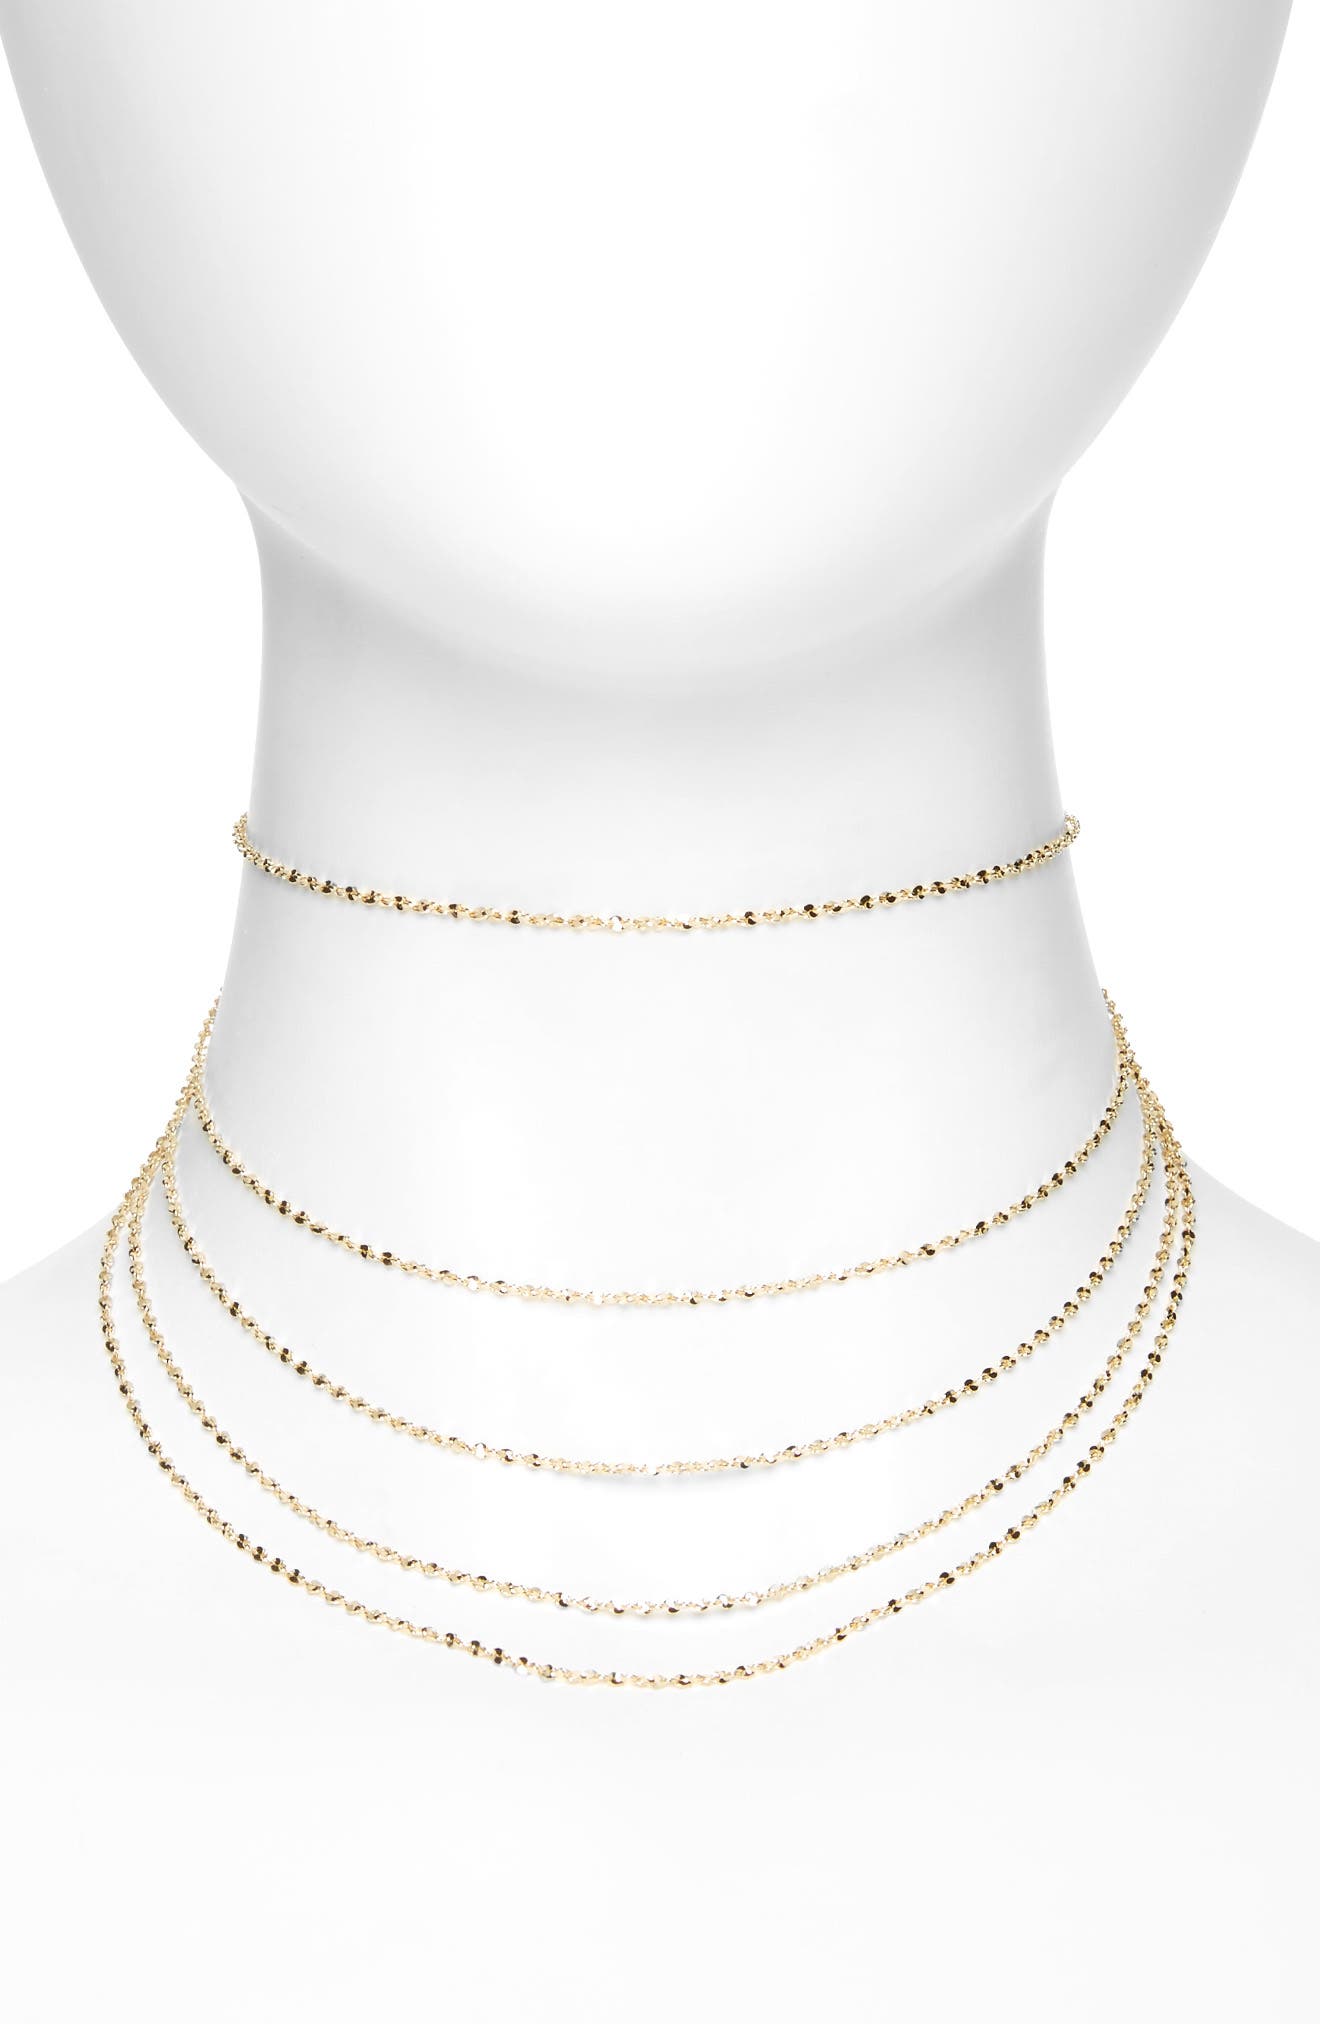 Women's Crystal Pearl Gold Silver Chain Pendant Choker Bib Necklace Set Earrings 